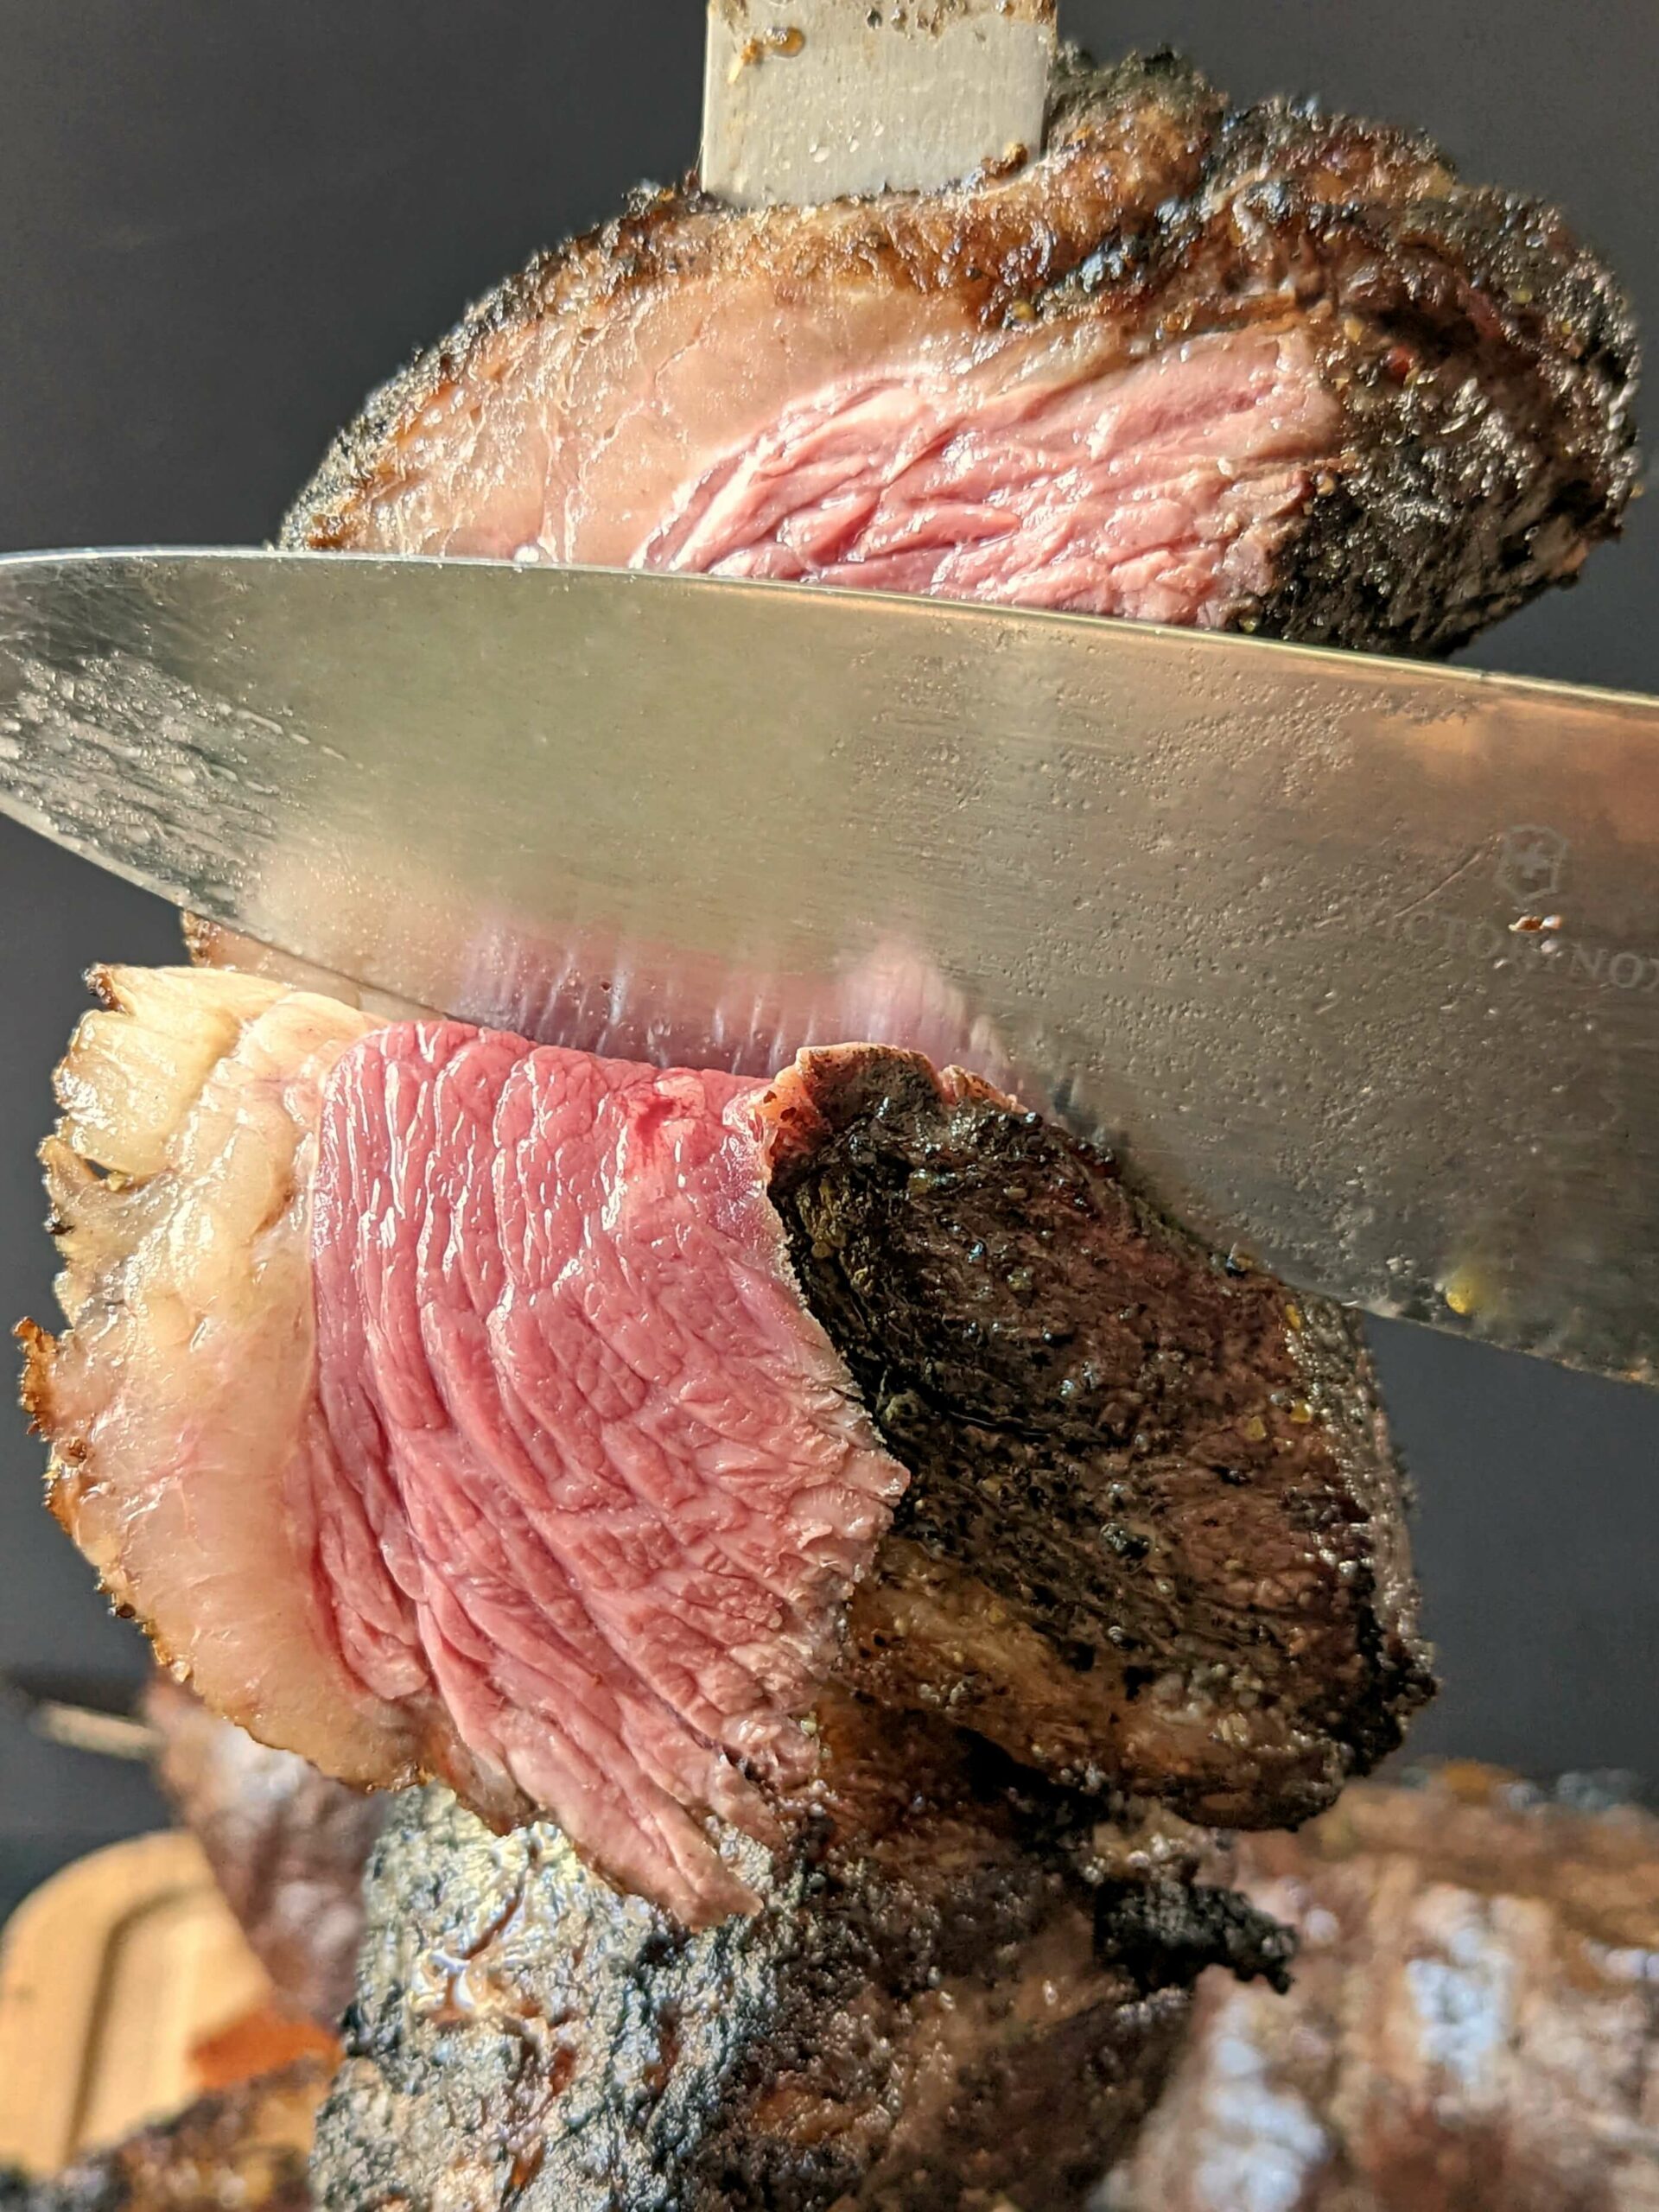 A knife cutting a picanha steak.